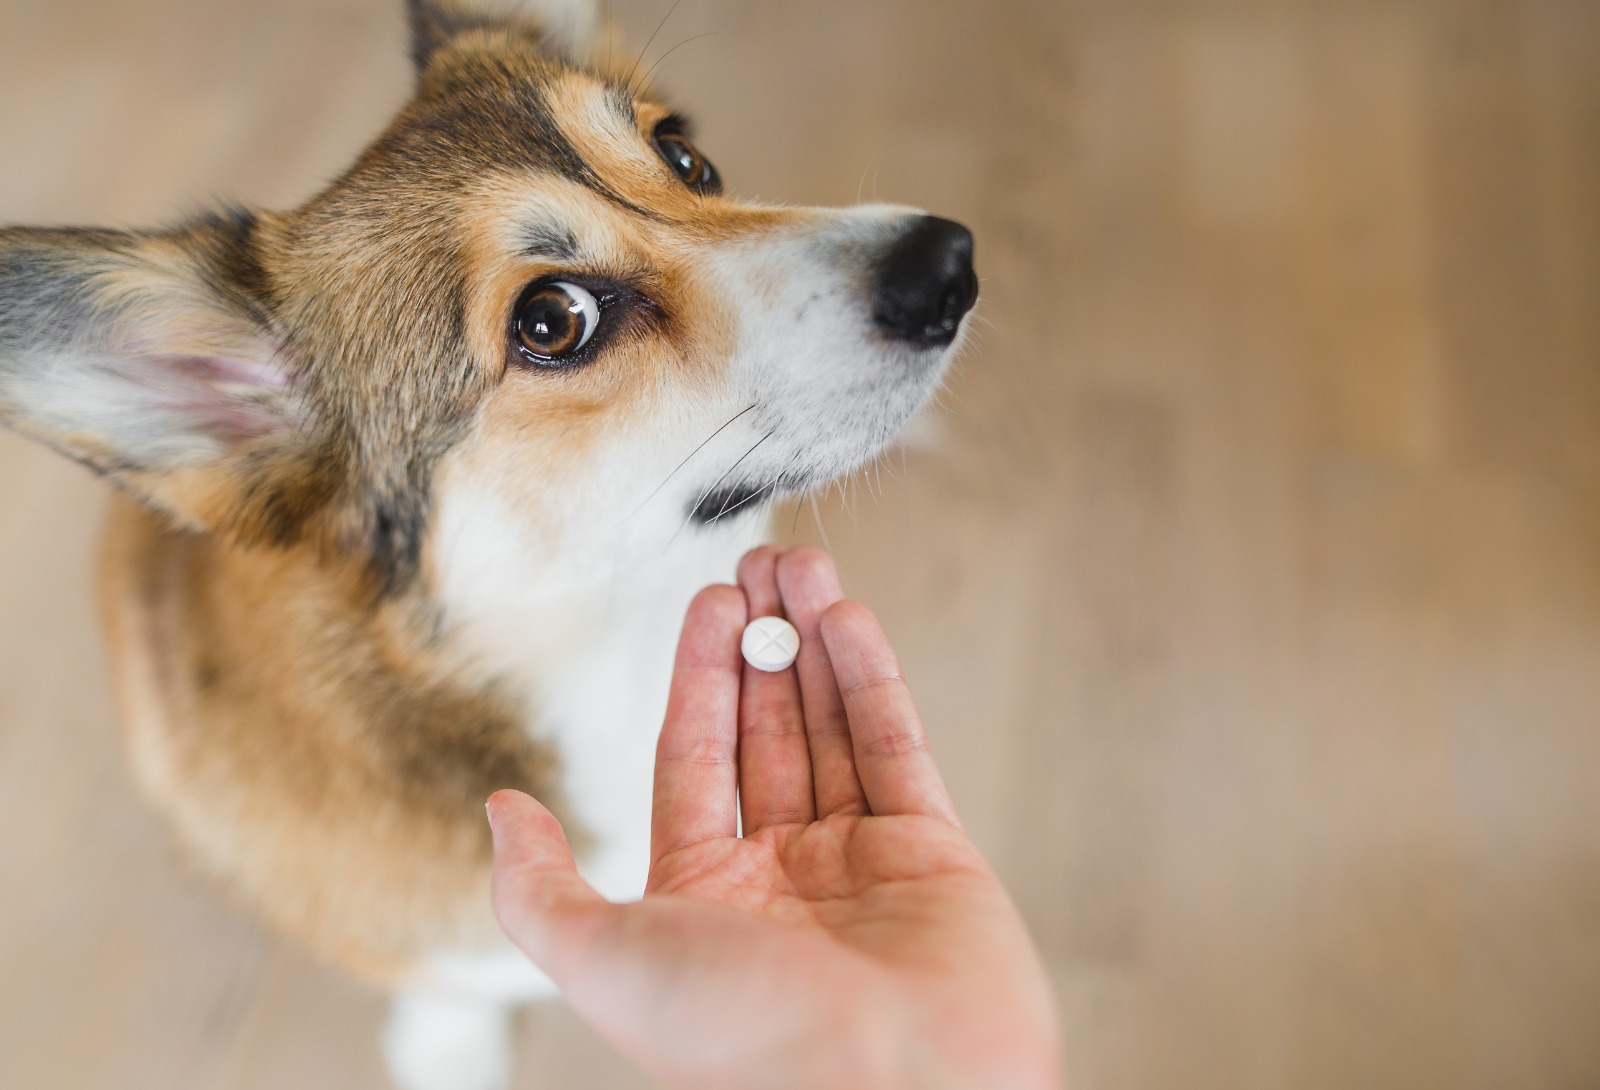 Automedicar a perros y gatos sin consultar al veterinario pone en peligro su salud y su vida. (Foto Prensa Libre, Shutterstock)